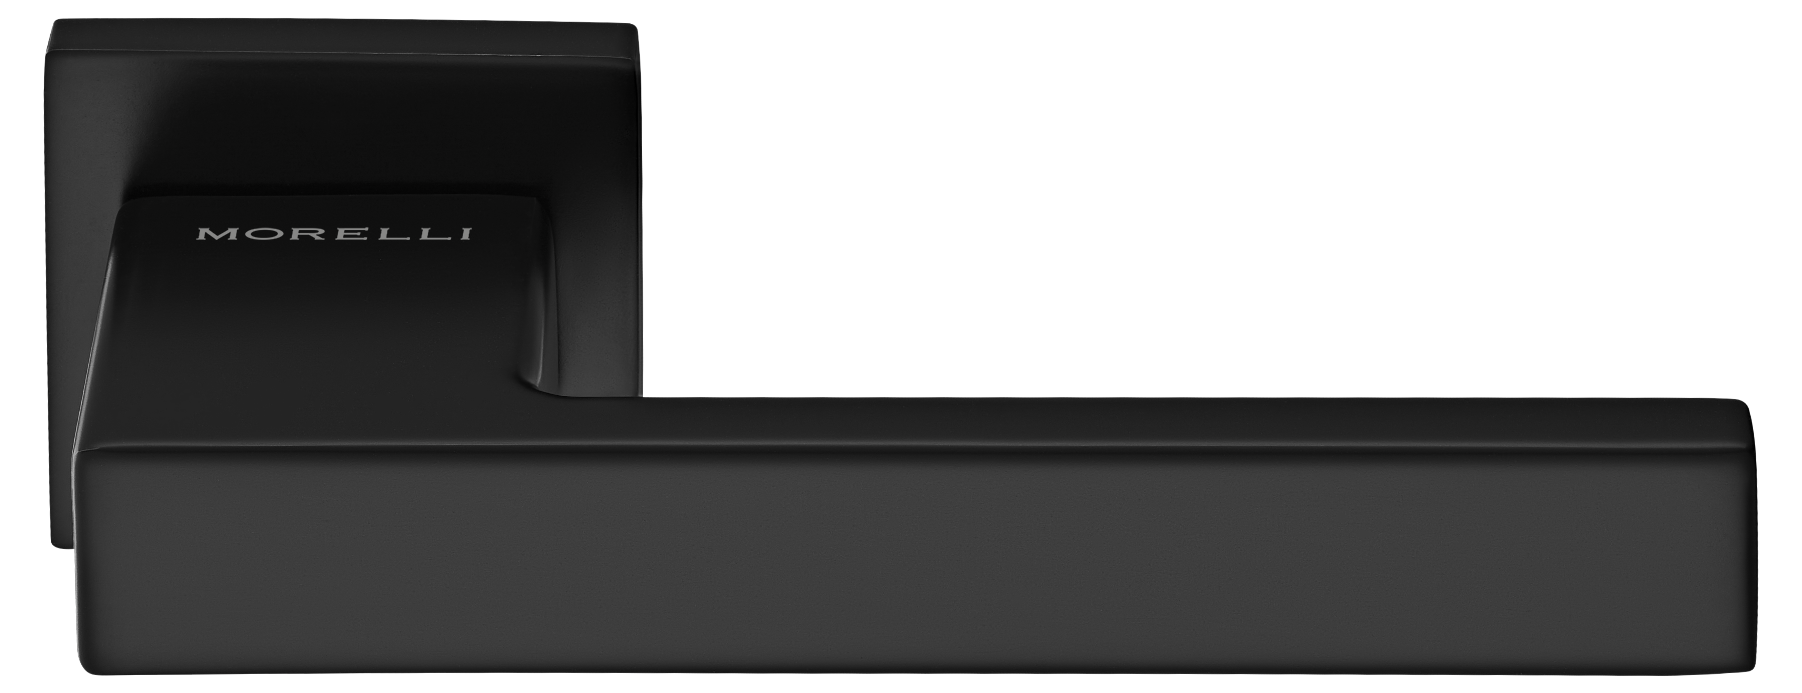 LOT ручка дверная на квадратной розетке 6 мм, MH-56-S6 BL, цвет - черный фото купить Ижевск